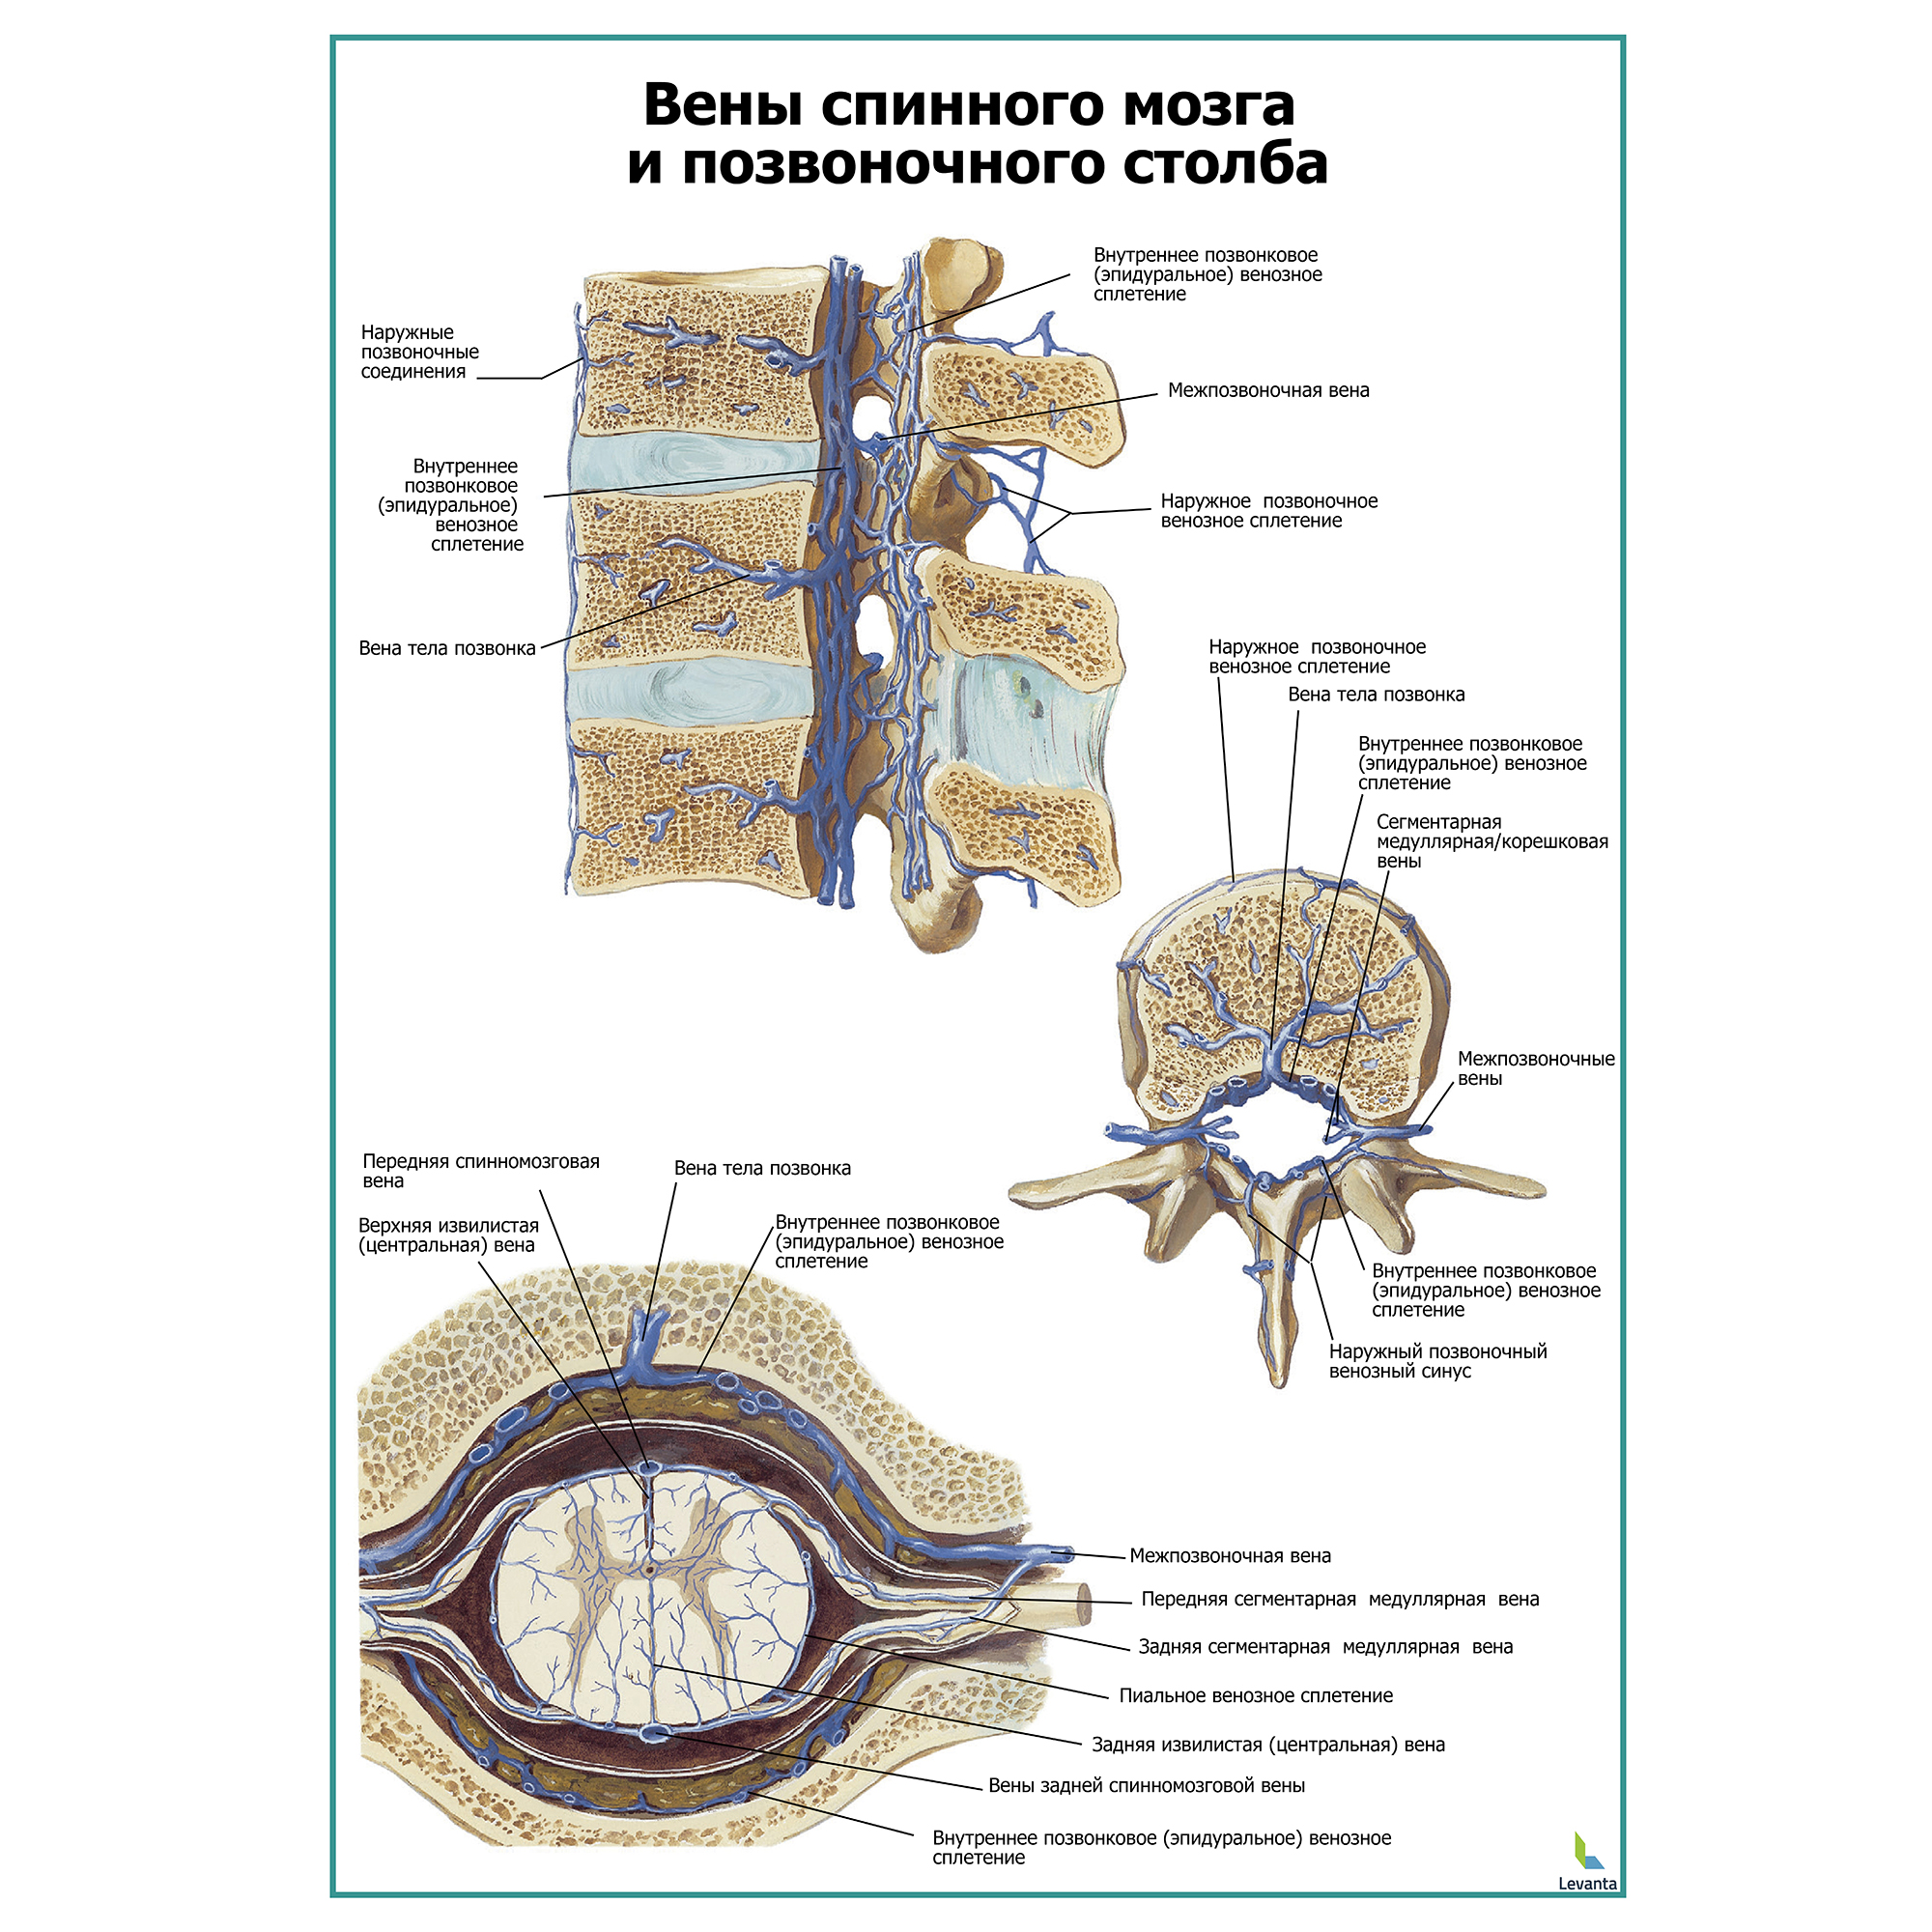 Вены спинного мозга и позвоночного столба